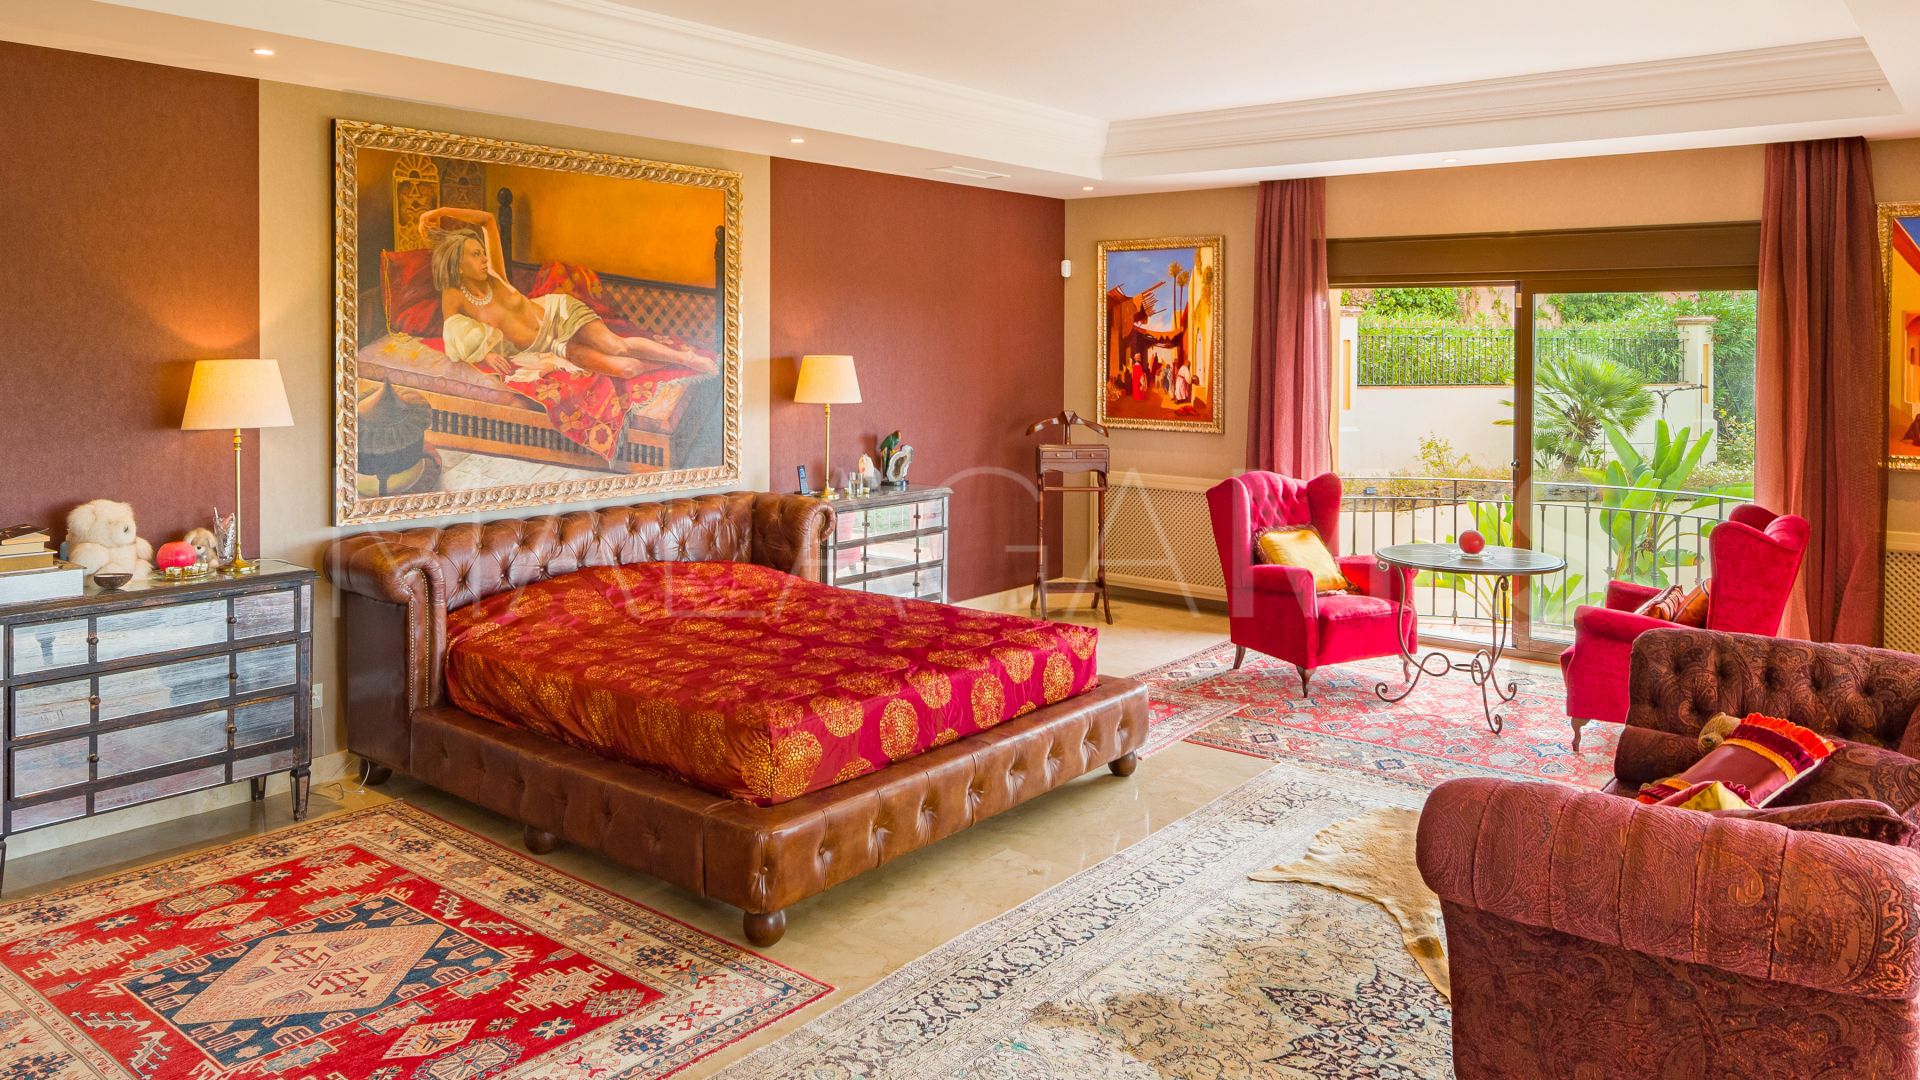 Buy Vega del Colorado villa with 5 bedrooms